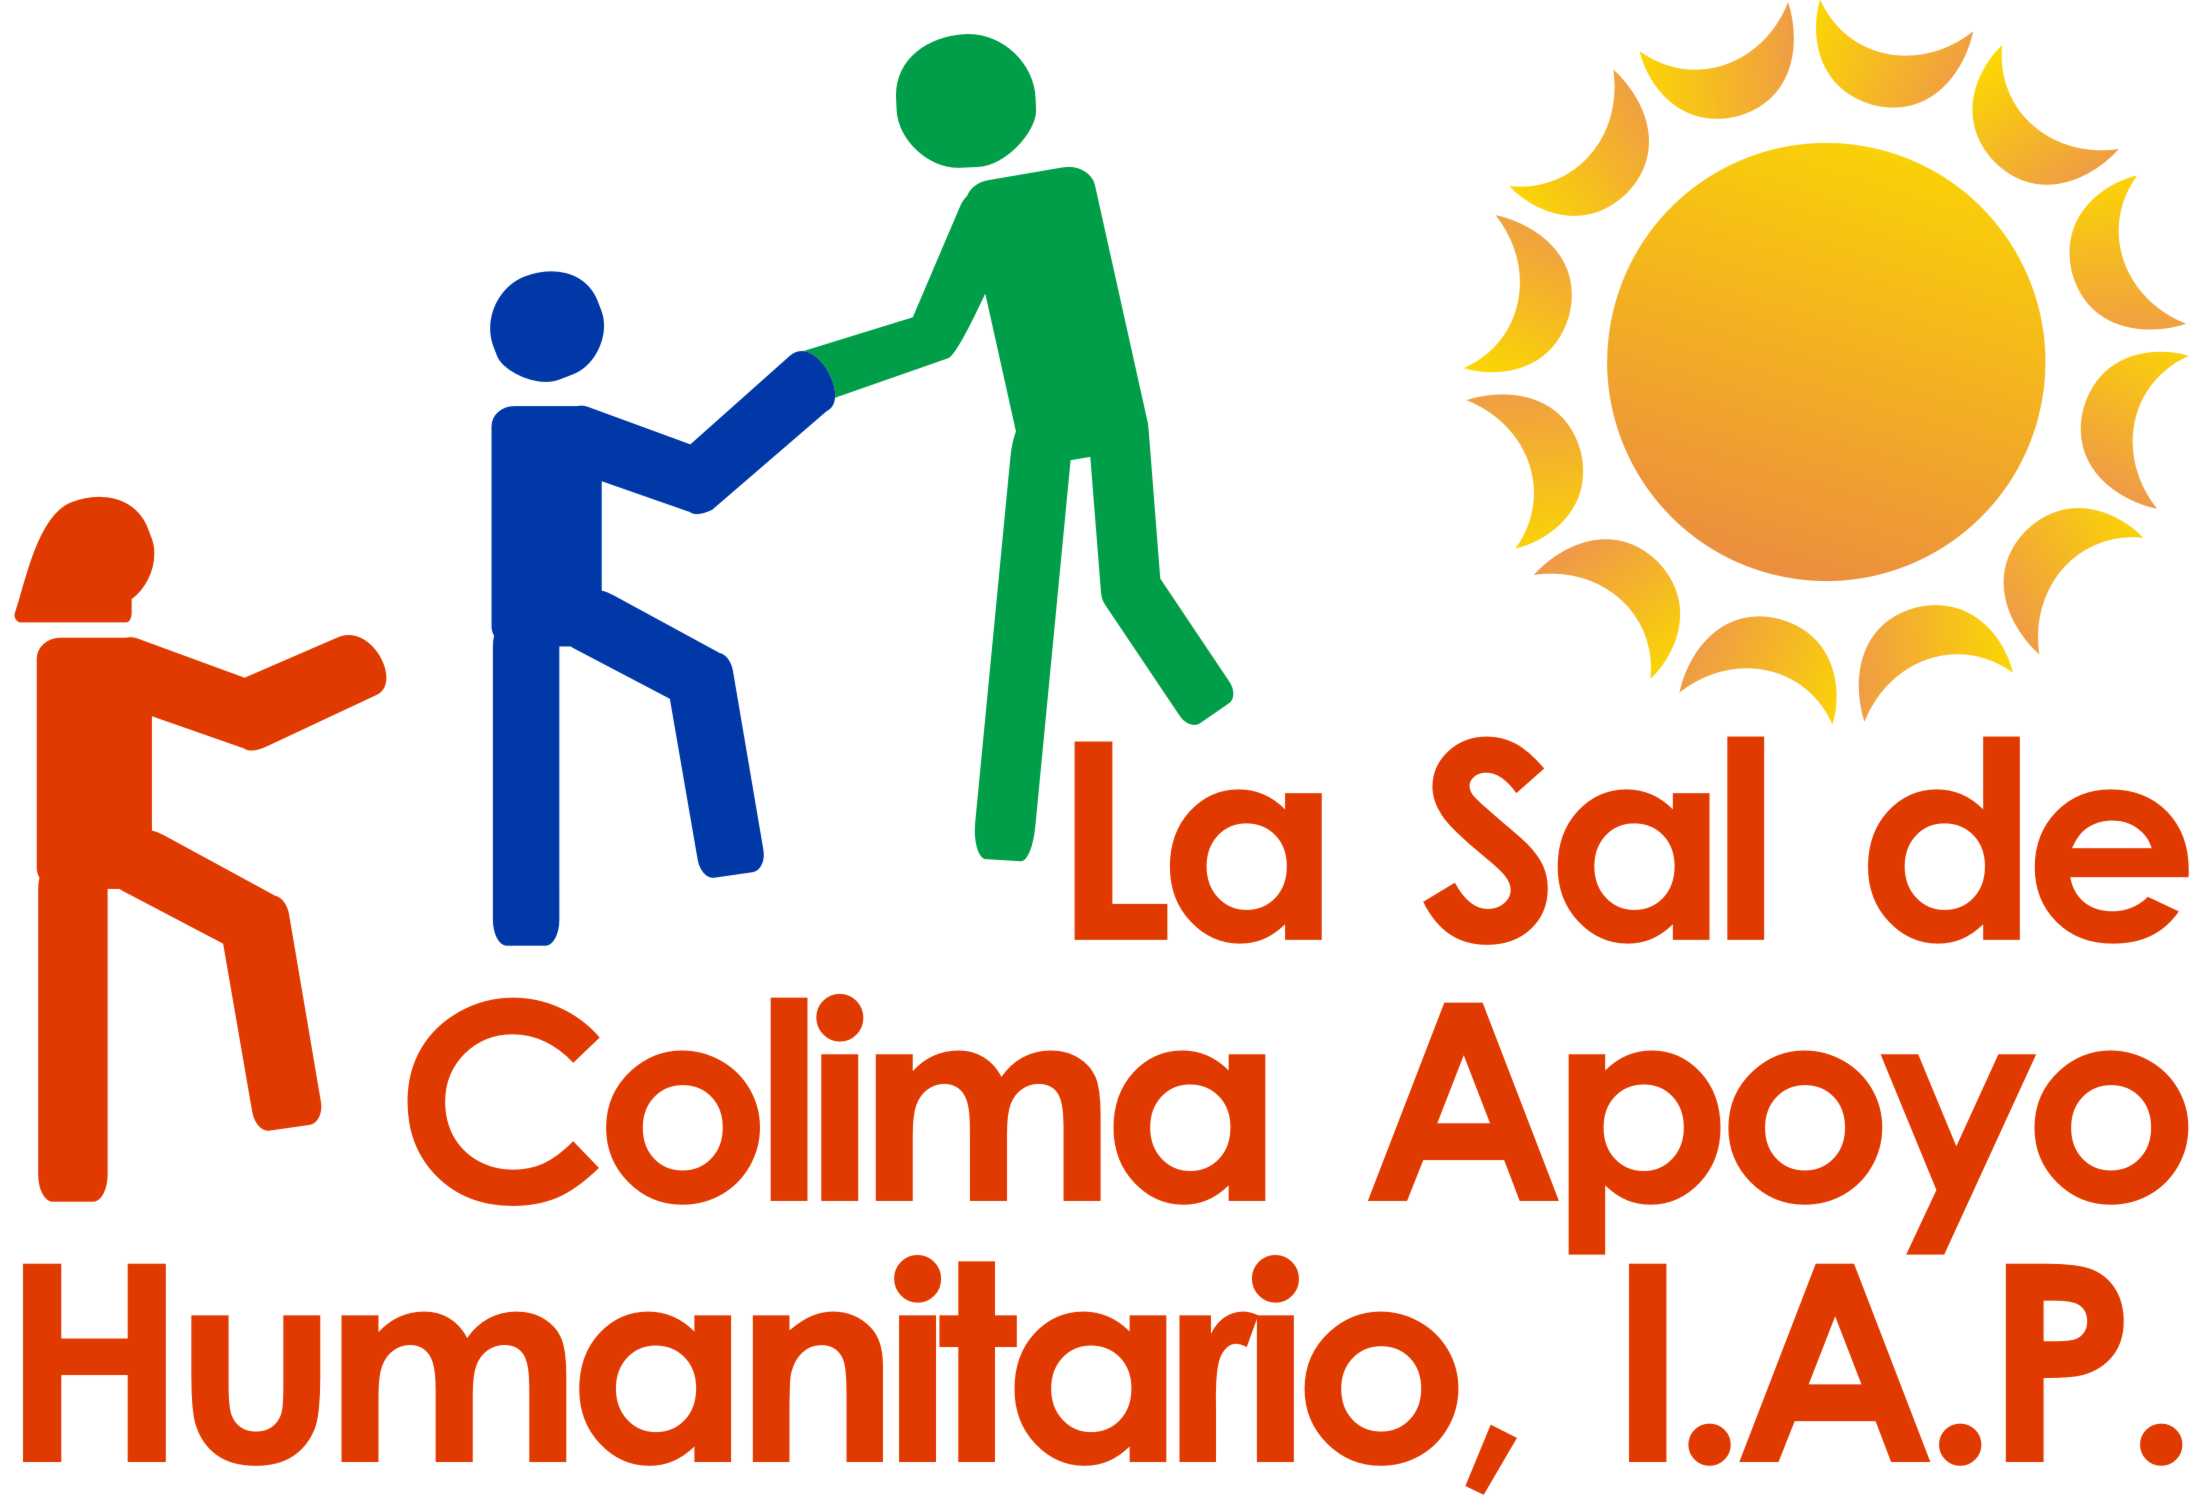 La Sal de Colima, Apoyo Humanitario, I.A.P.